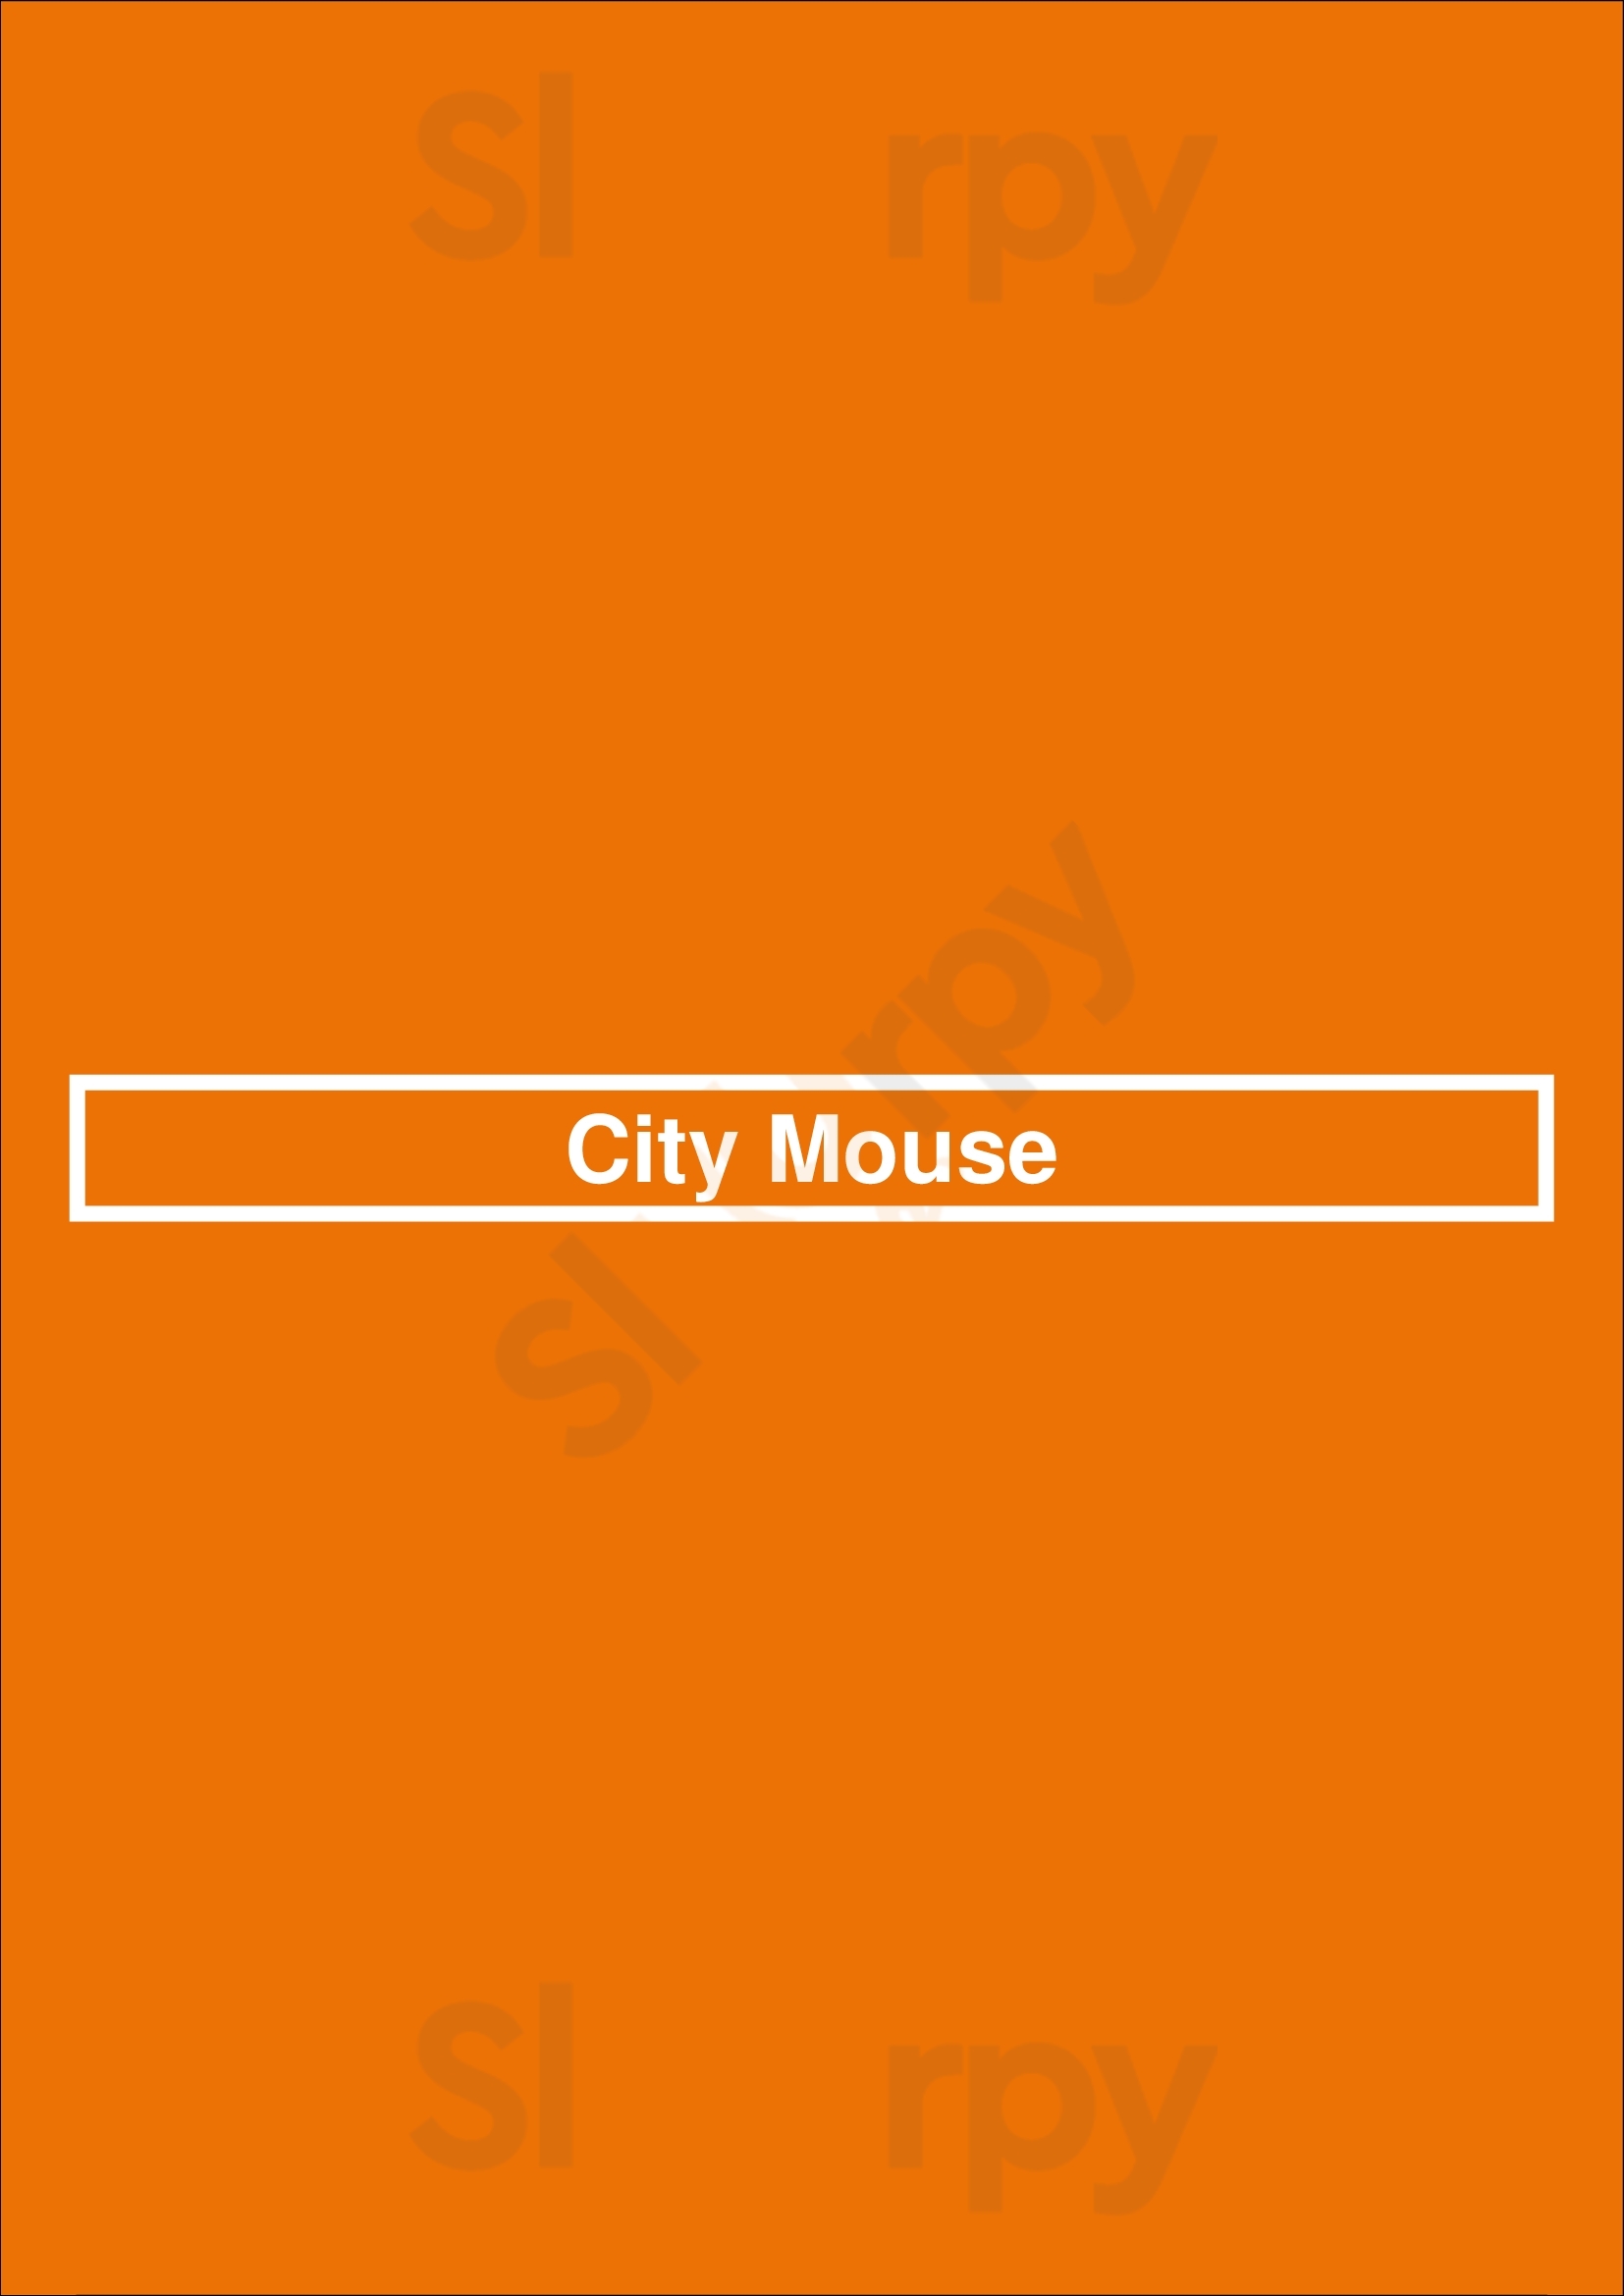 City Mouse Chicago Menu - 1